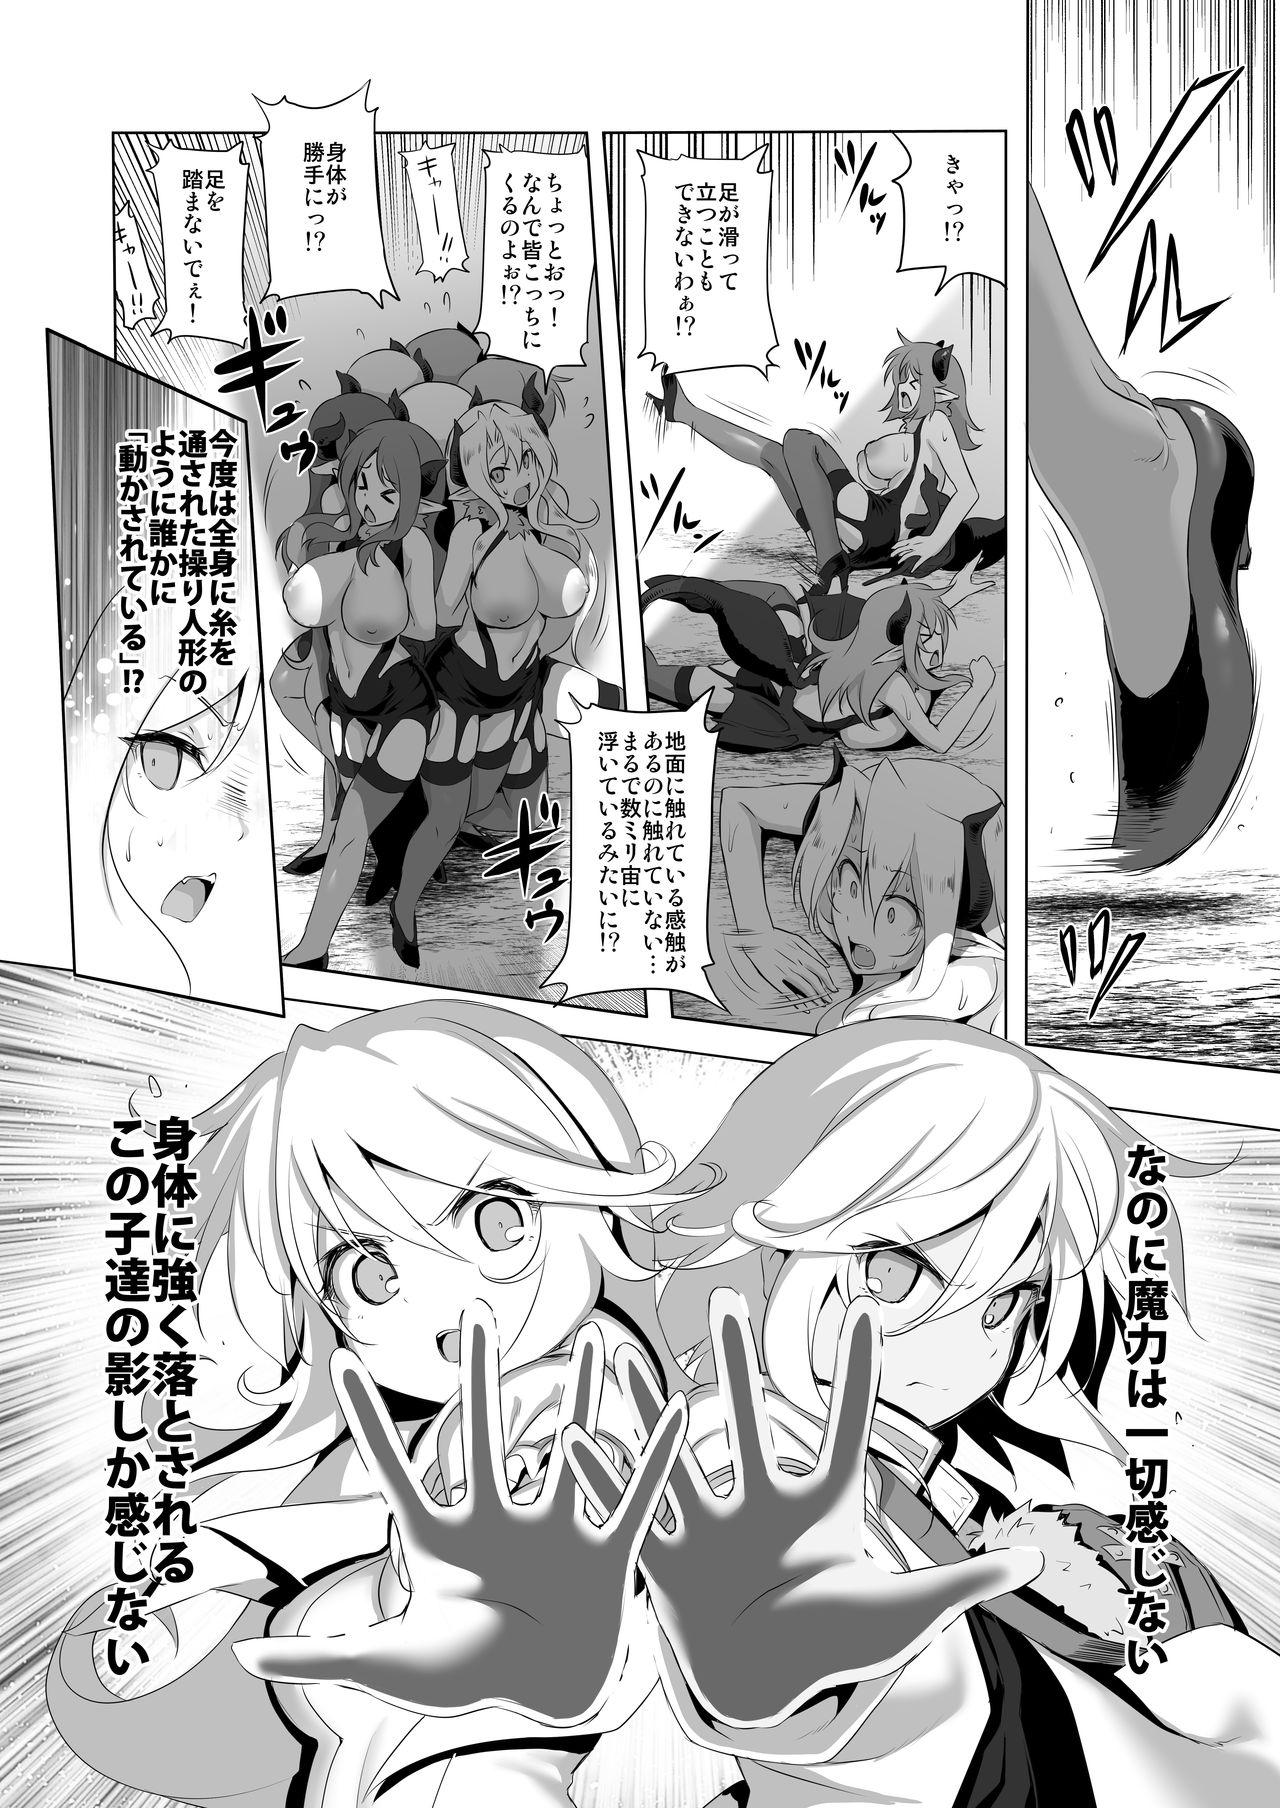 Women Makotoni Zannen desu ga Bouken no Sho 6 wa Kiete Shimaimashita. - Original Macho - Page 8